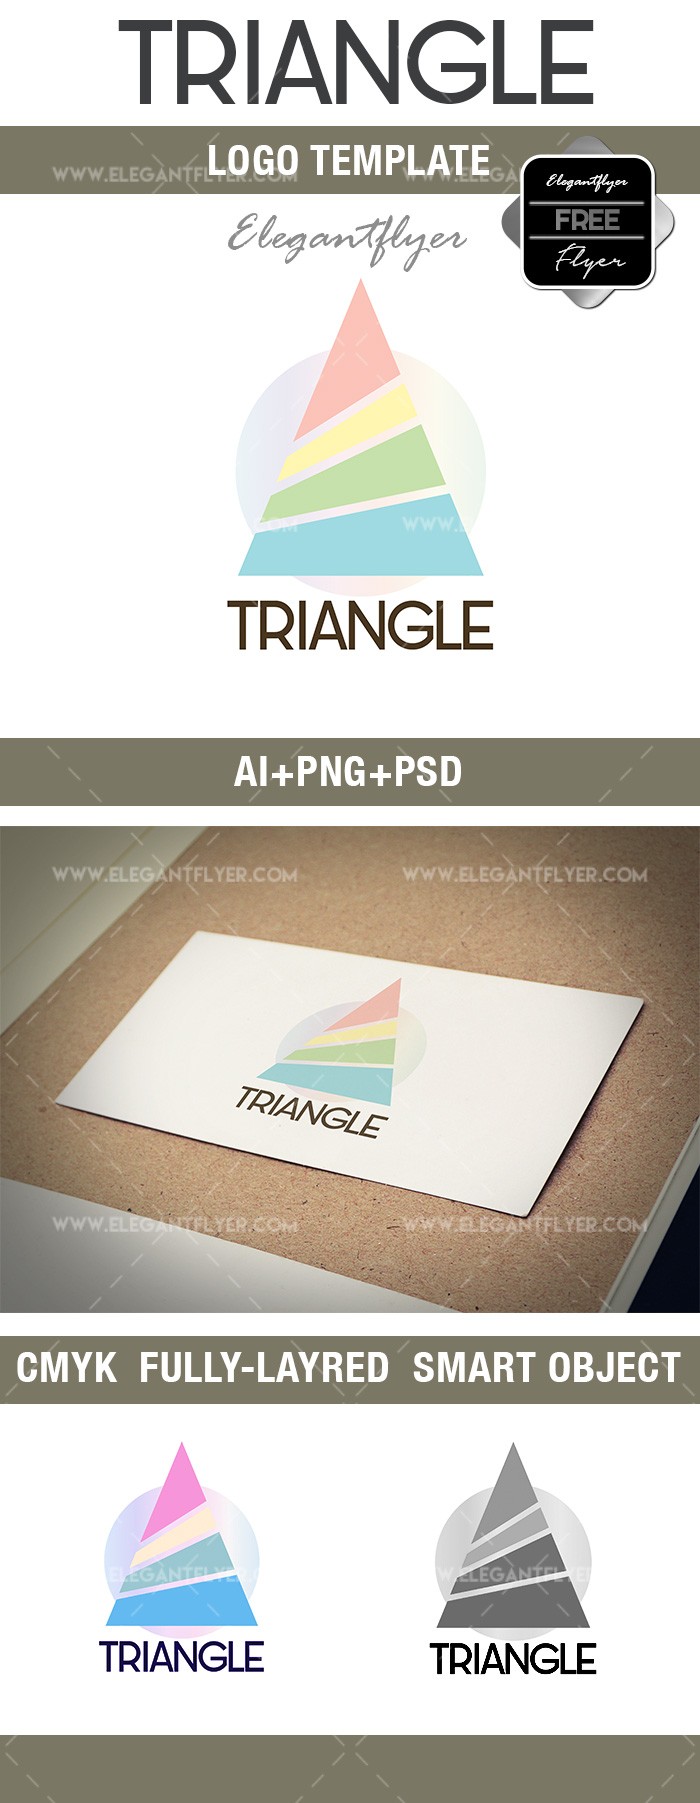 Triângulo by ElegantFlyer